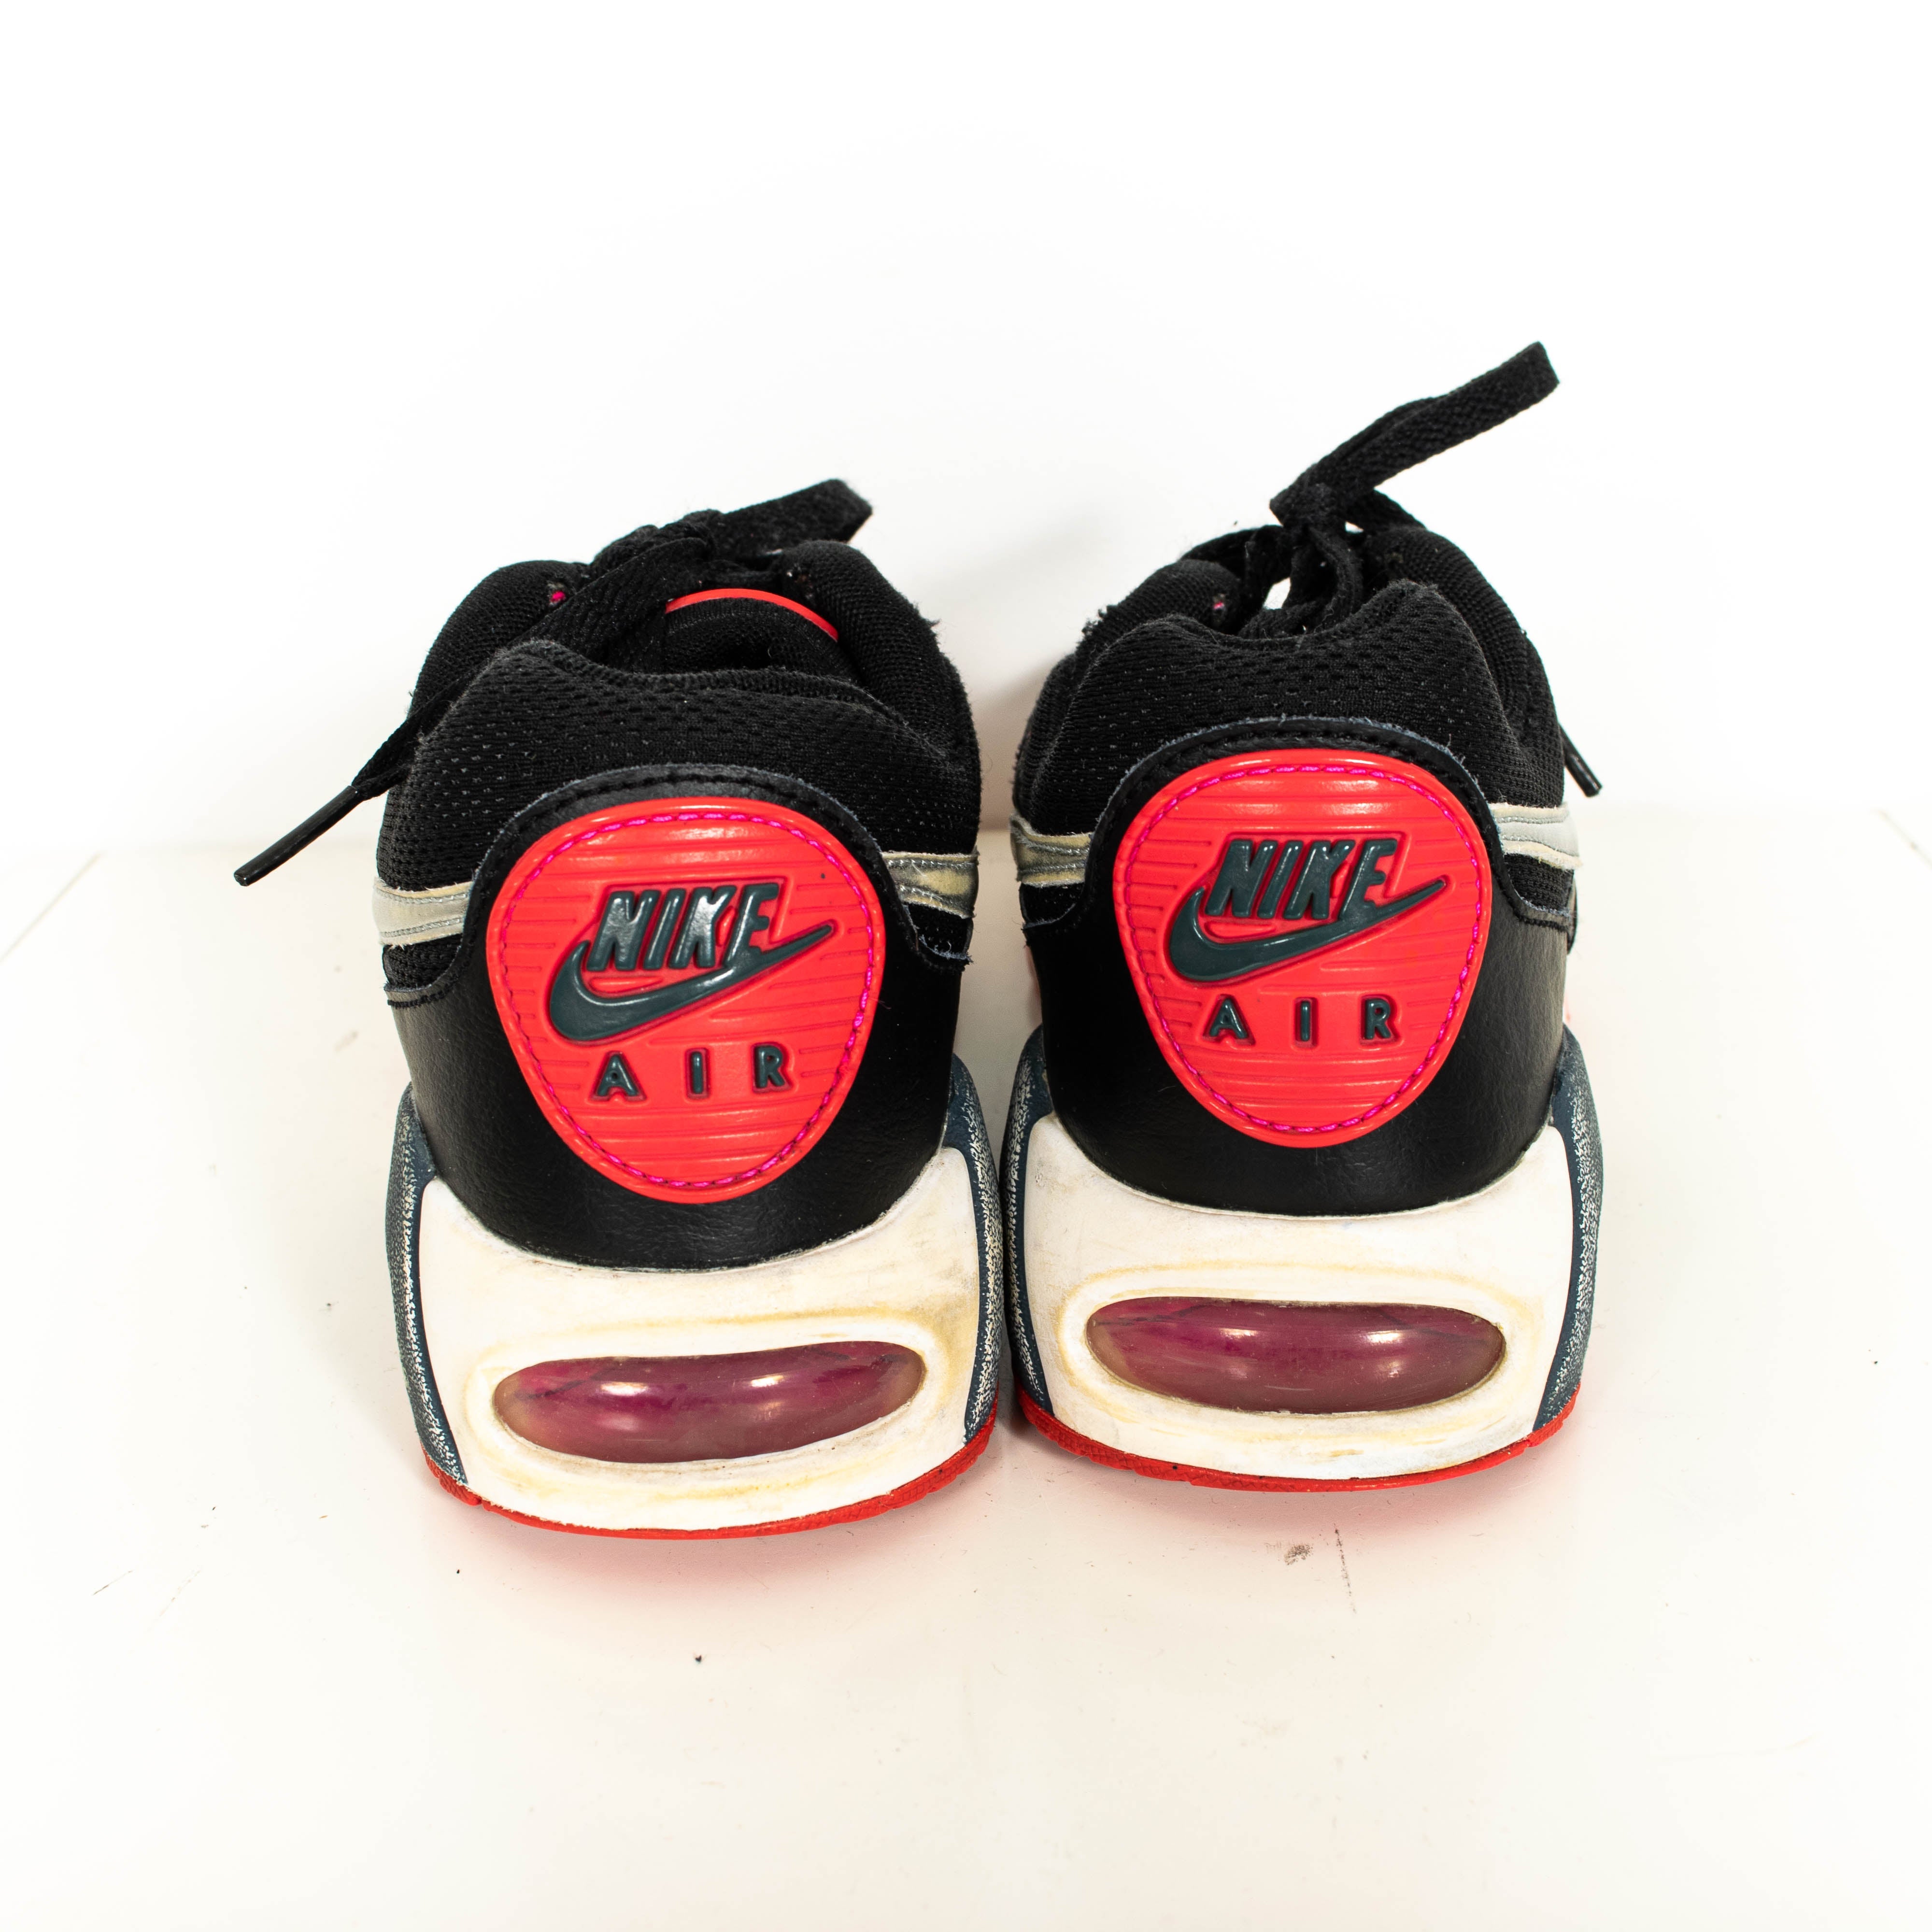 Nike Air Max IVO Black Pink Low Top Sneakers Womens EU39